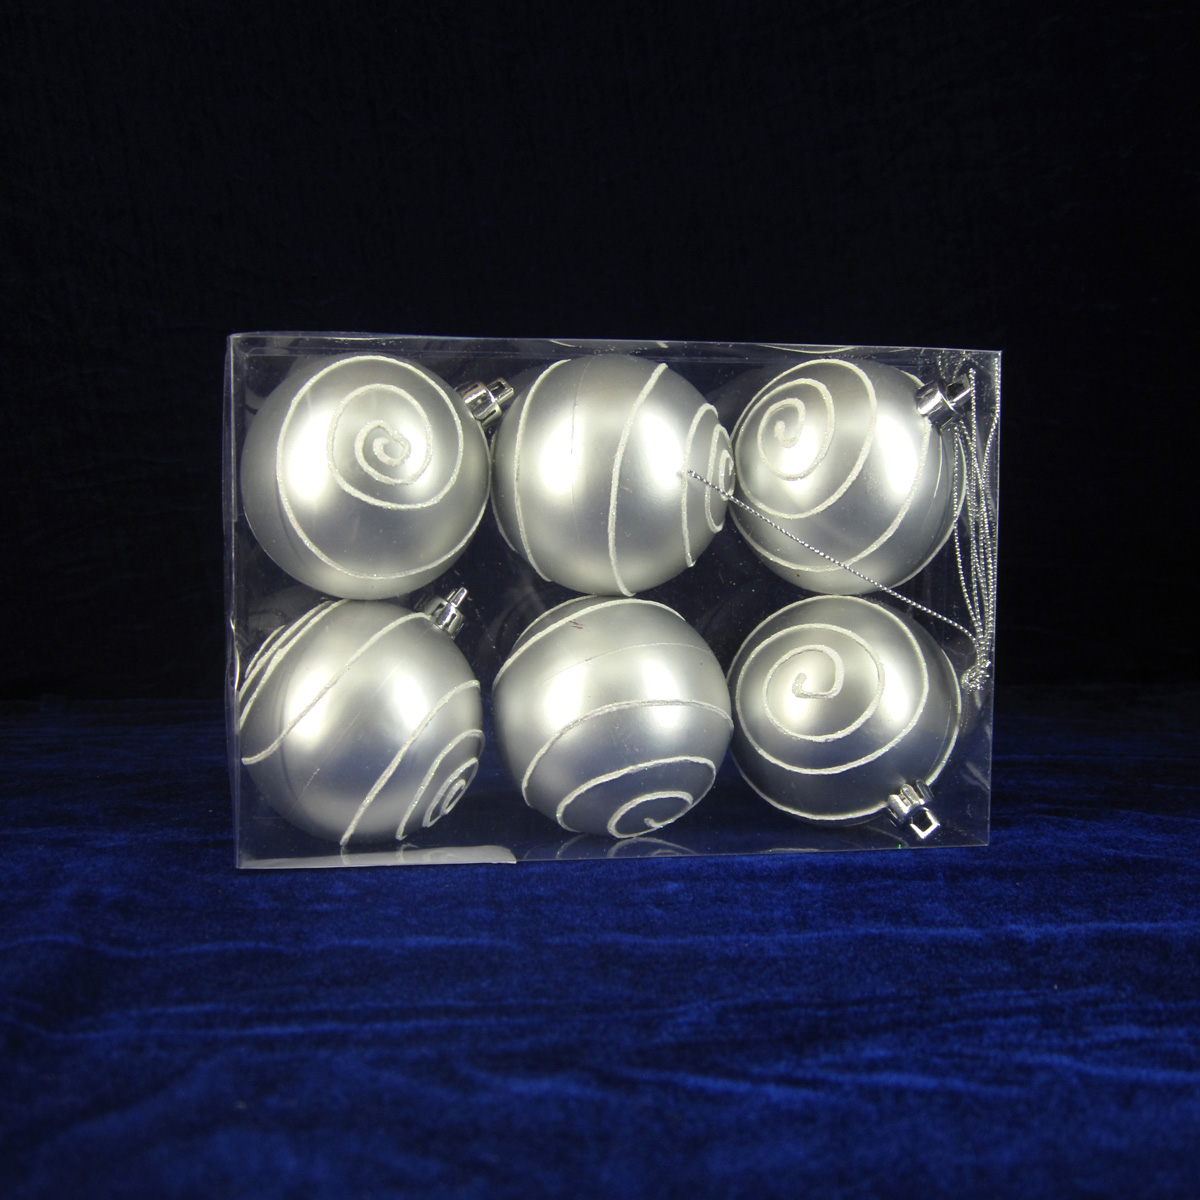 Eccellente qualità di plastica ornamento natale palla decorativa